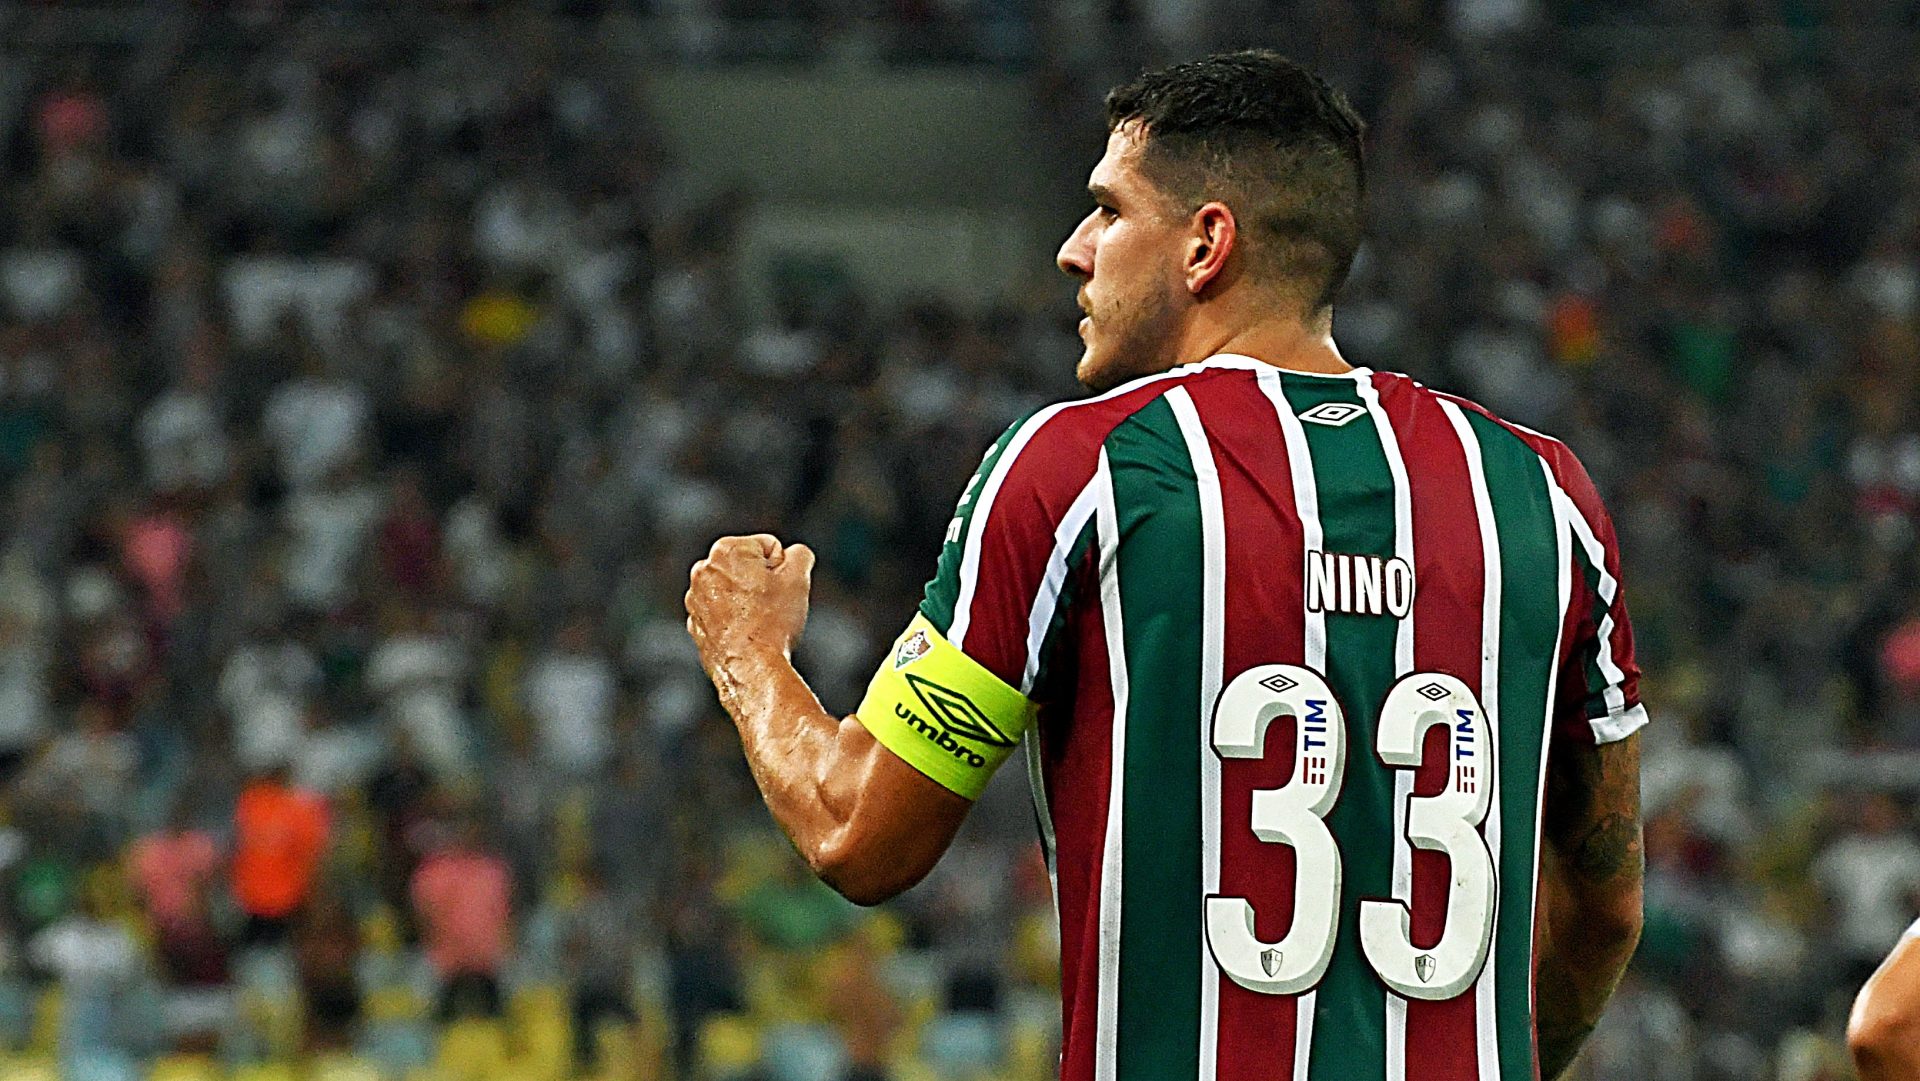 Zagueiro Nino marcou o único gol da vitória tricolor sobre o The Strongest - Foto: Mailson Santana/FFC/divulgação